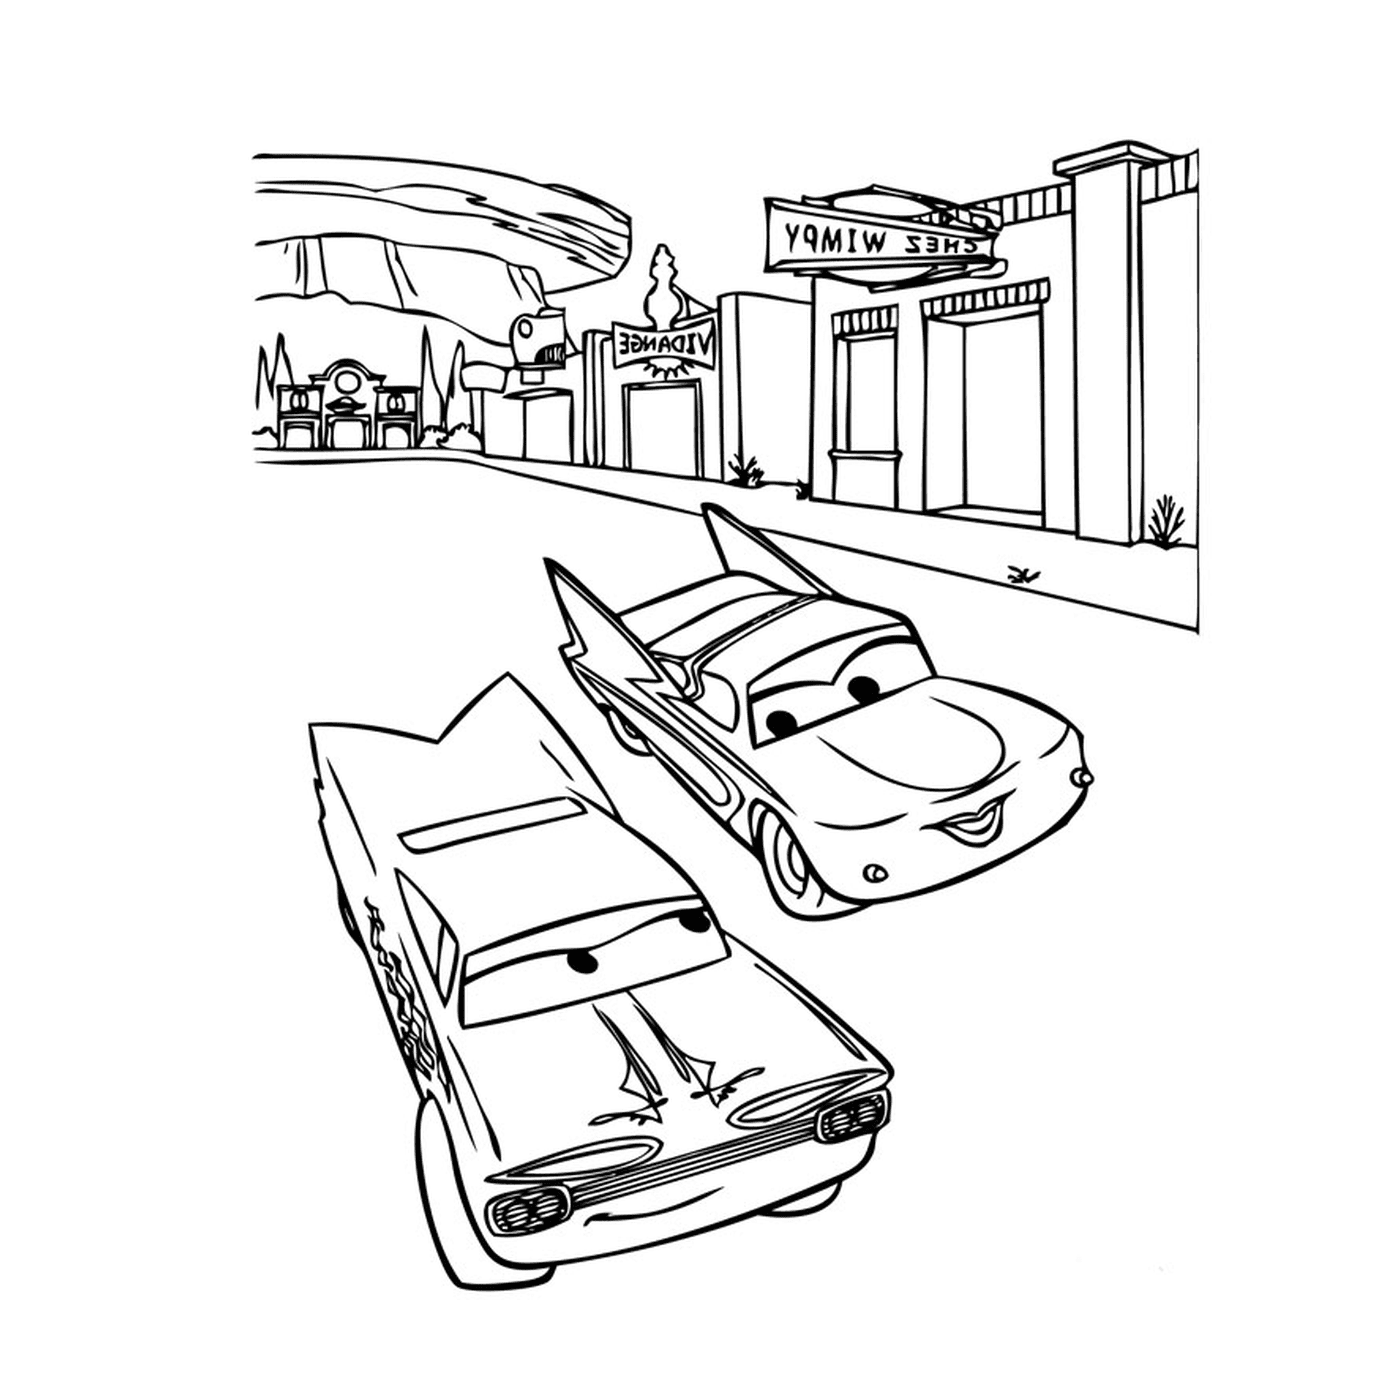  Машины на улице 